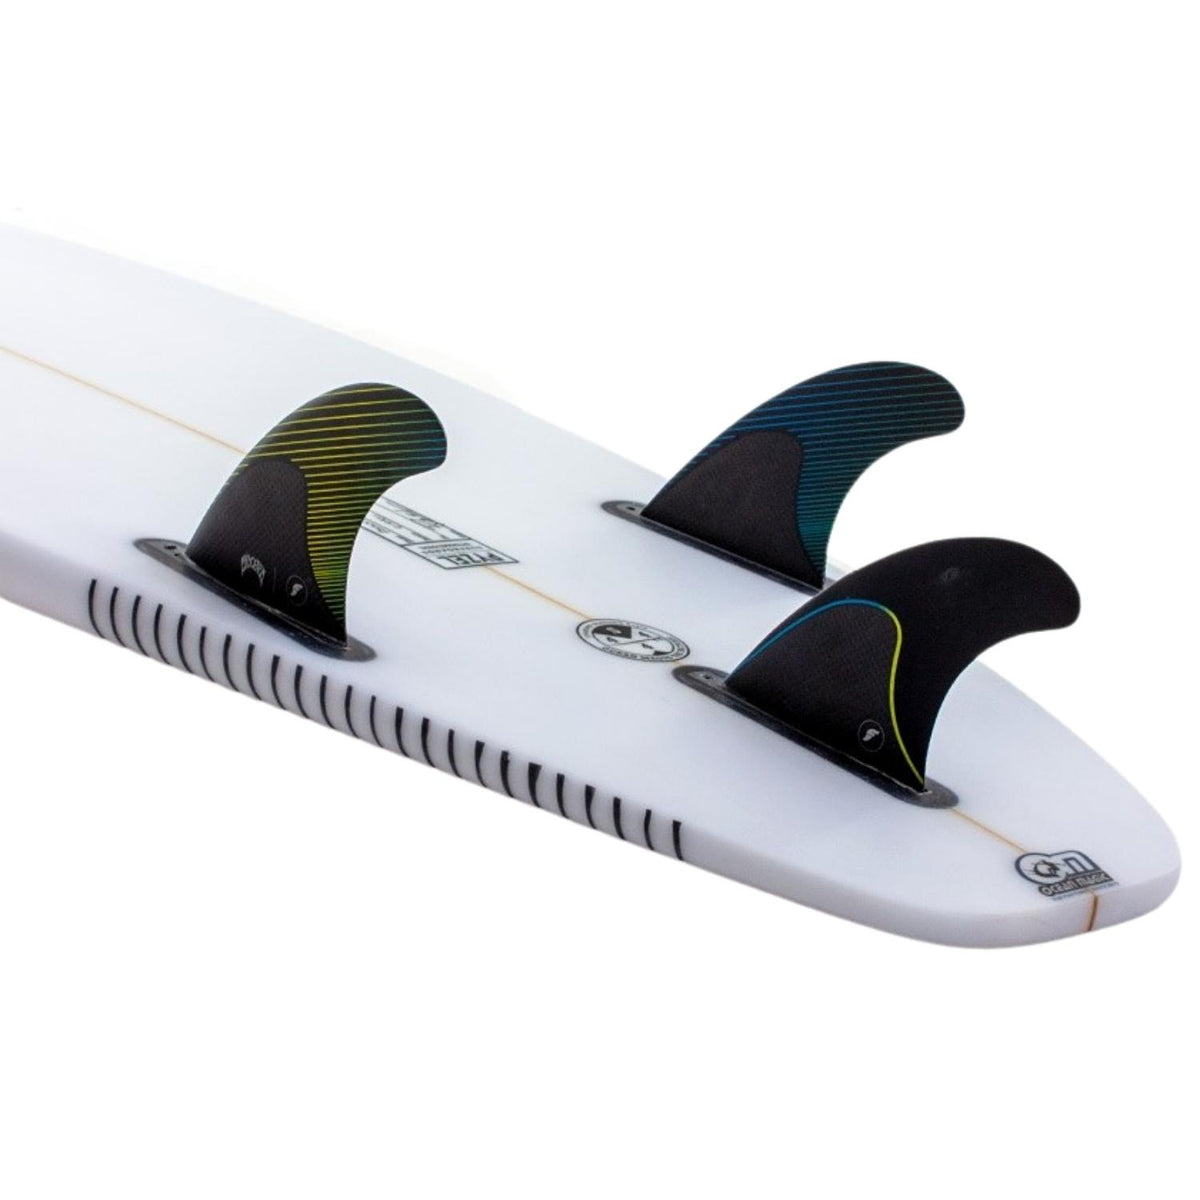 Futures Mayhem Medium Thruster Surfboard Fins - Yellow/Blue - Futures Fins by Futures Medium Fins